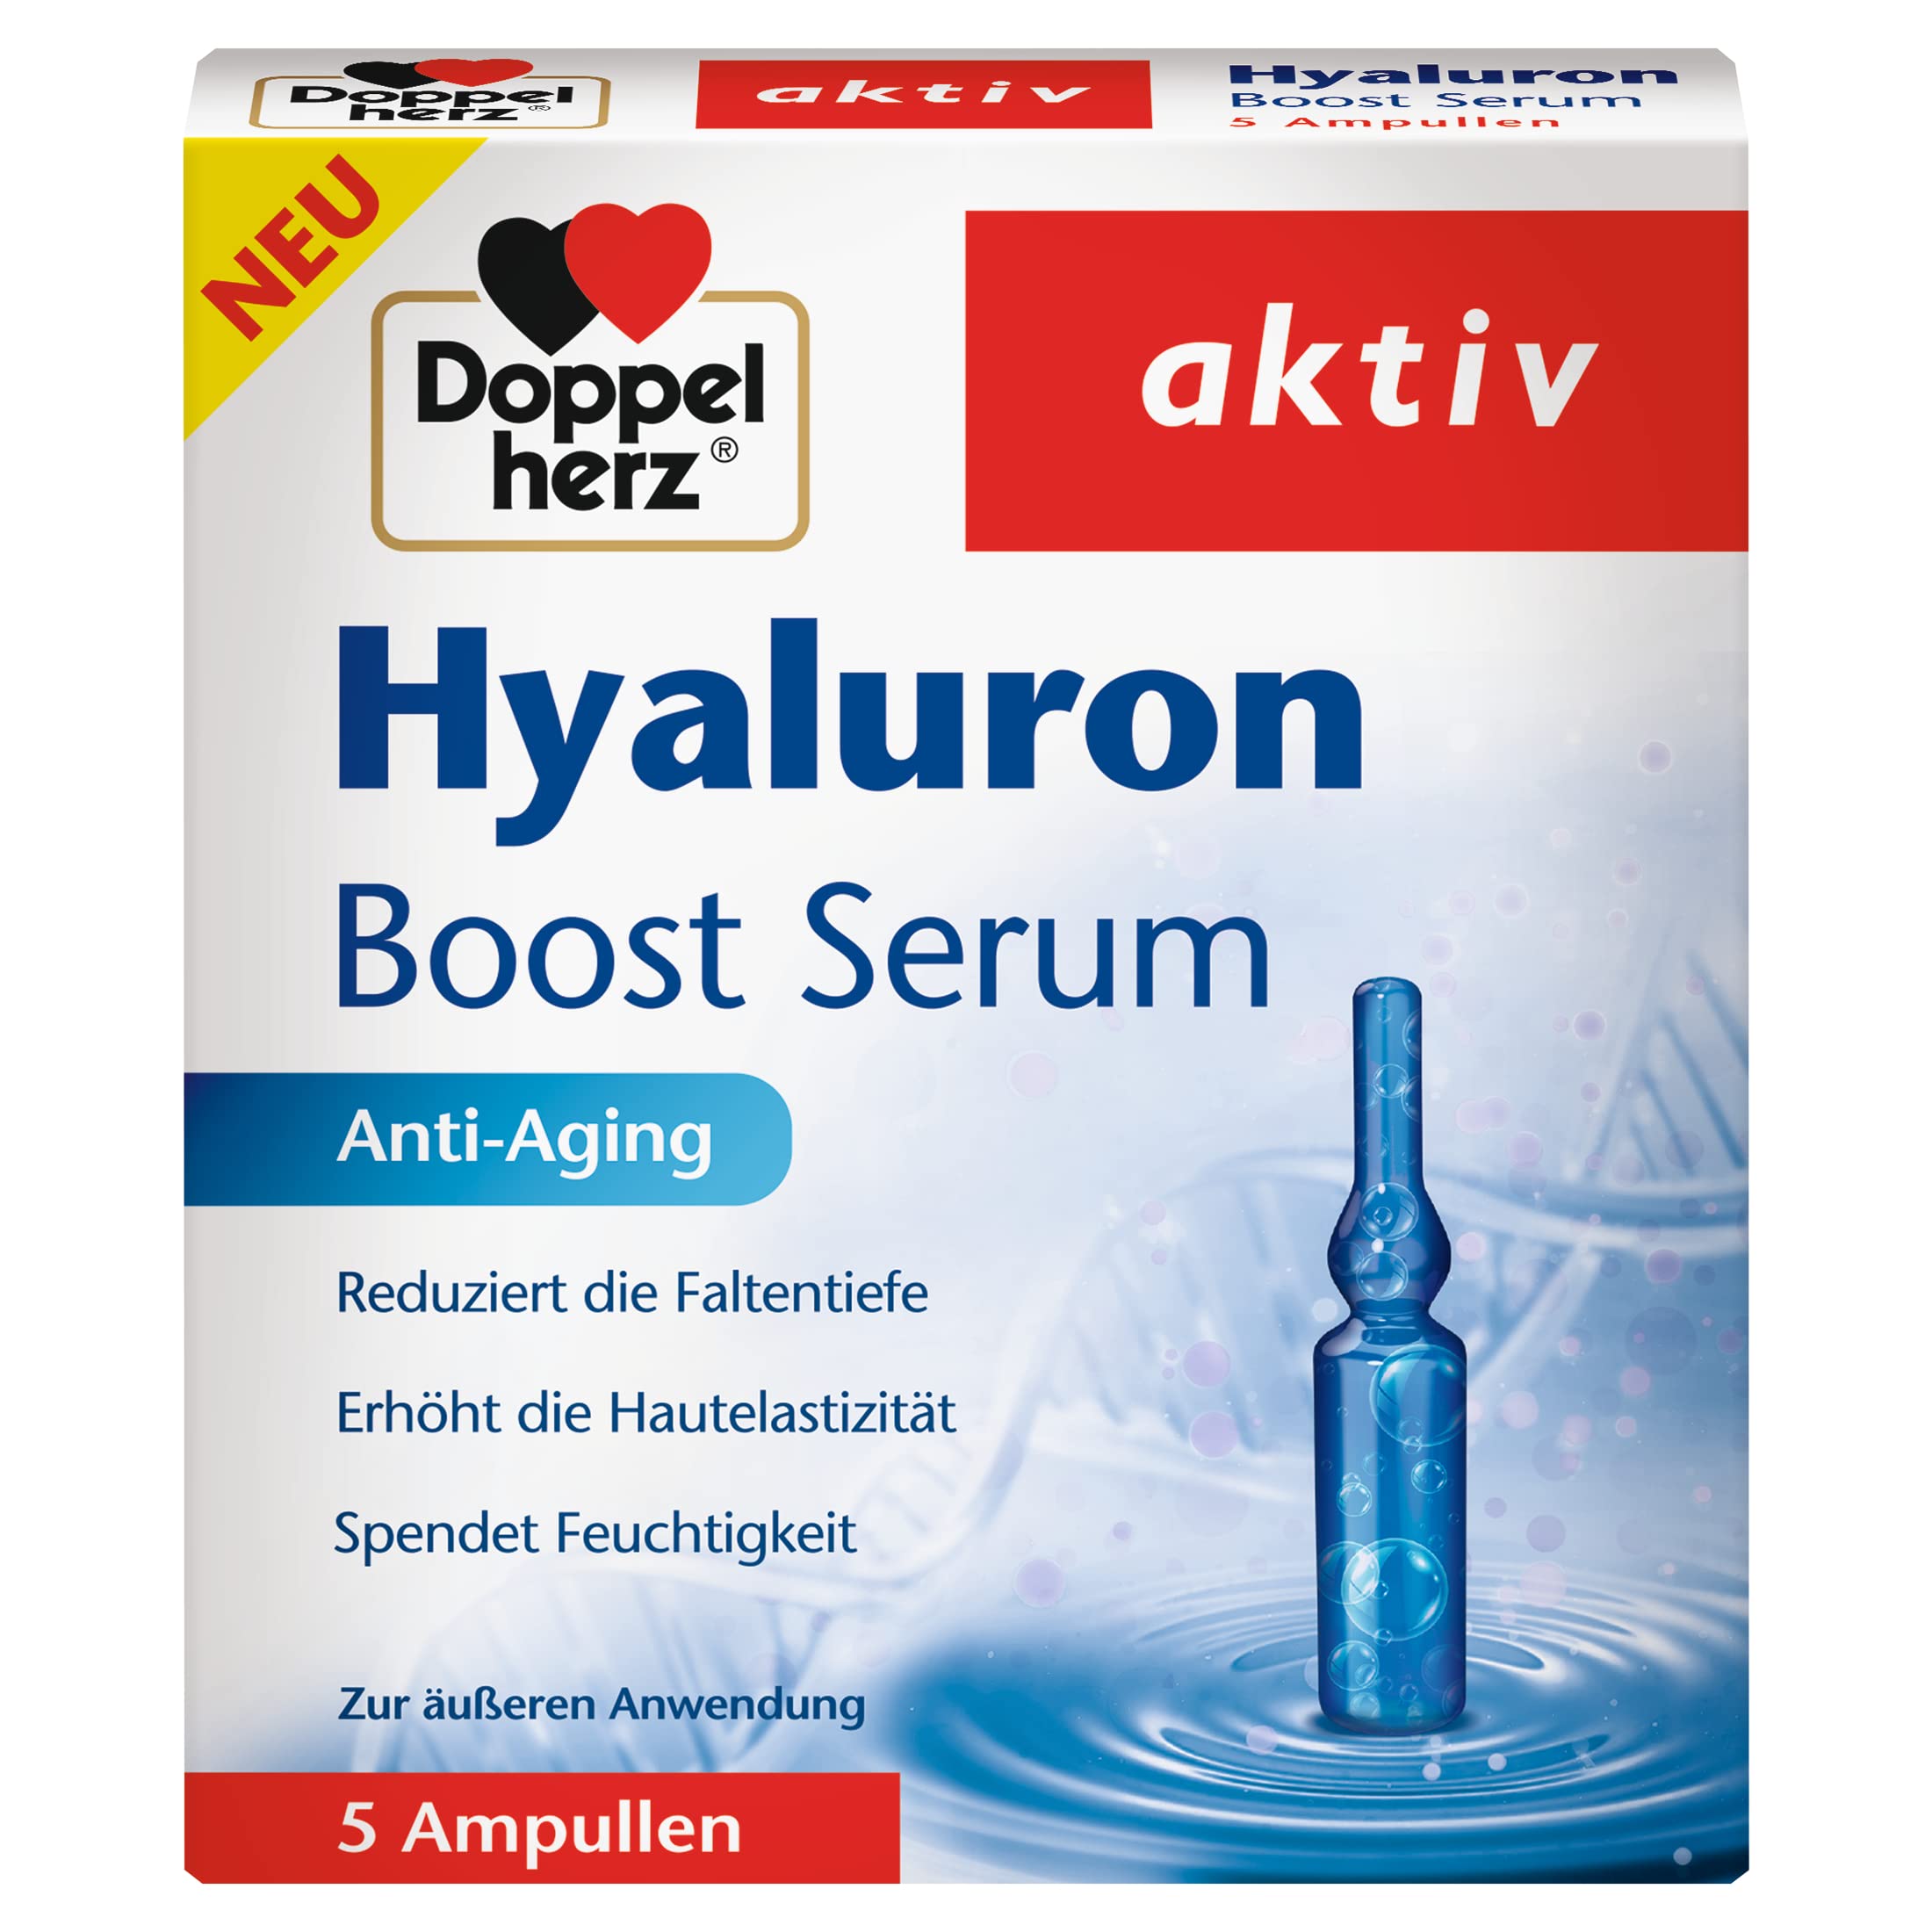 Doppelherz Hyaluron Boost Serum – Anti-Aging Ampullen zur äußeren Anwendung – 2er Pack (2 x 5 Ampullen)